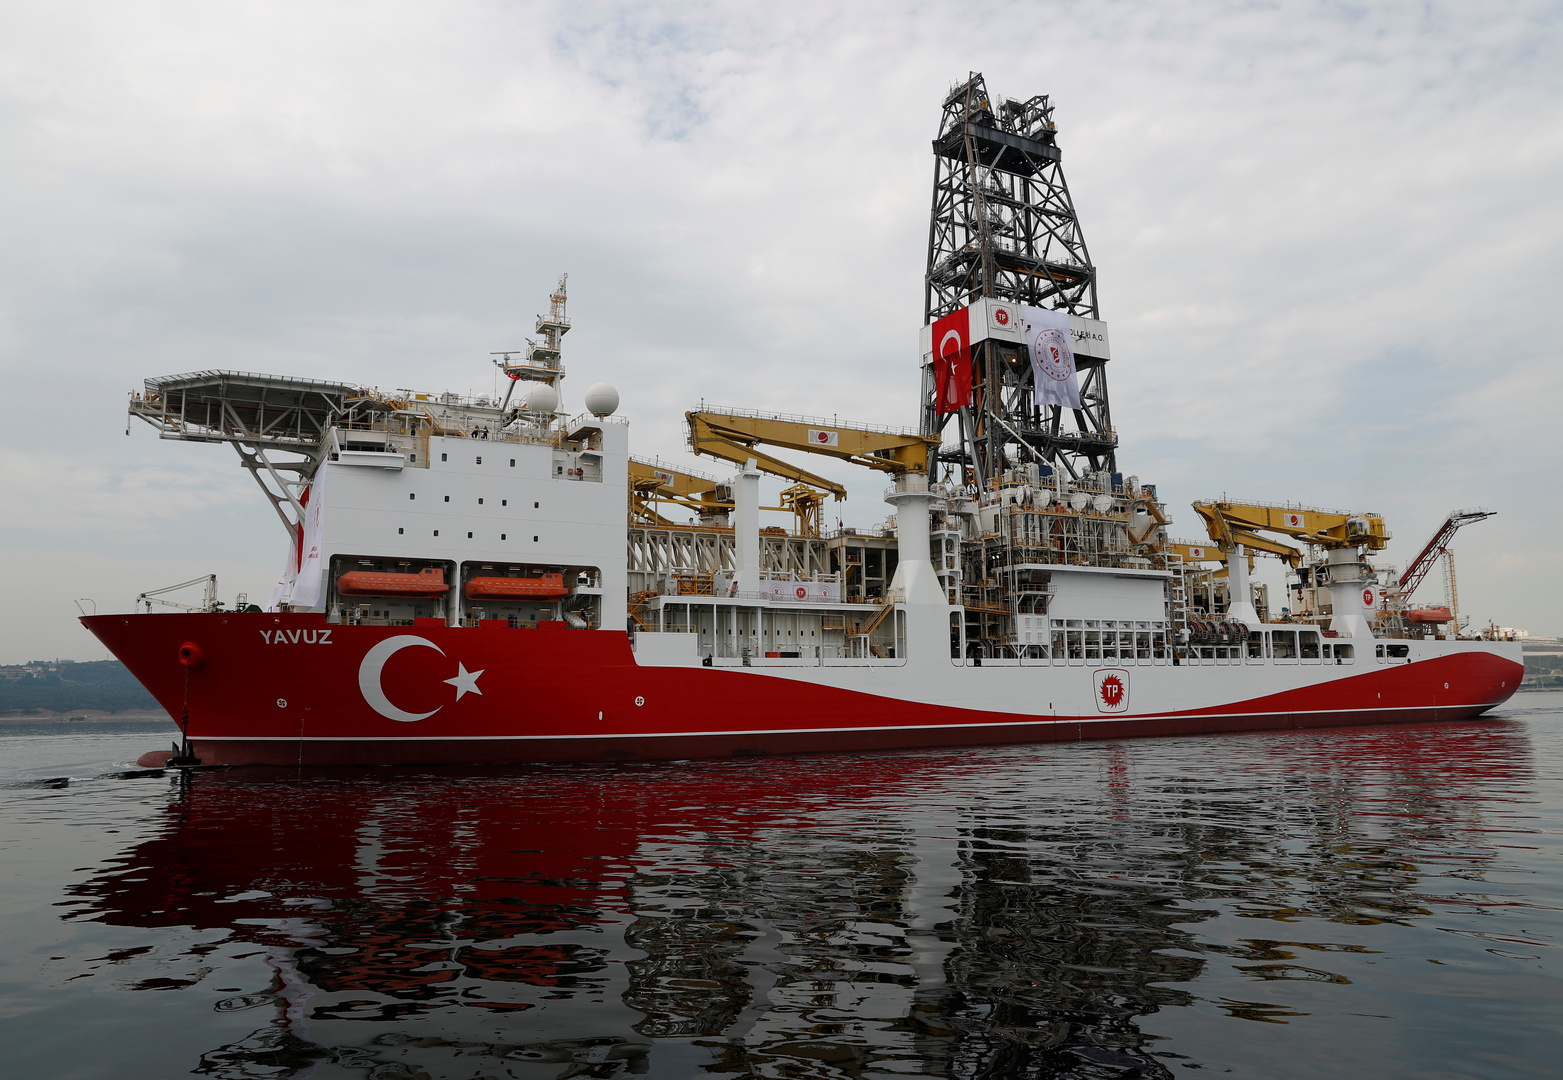 اليونان تدين إعادة تركيا سفينة تنقيب إلى شرق المتوسط وتعتبر ذلك تهديدا مباشرا للسلام